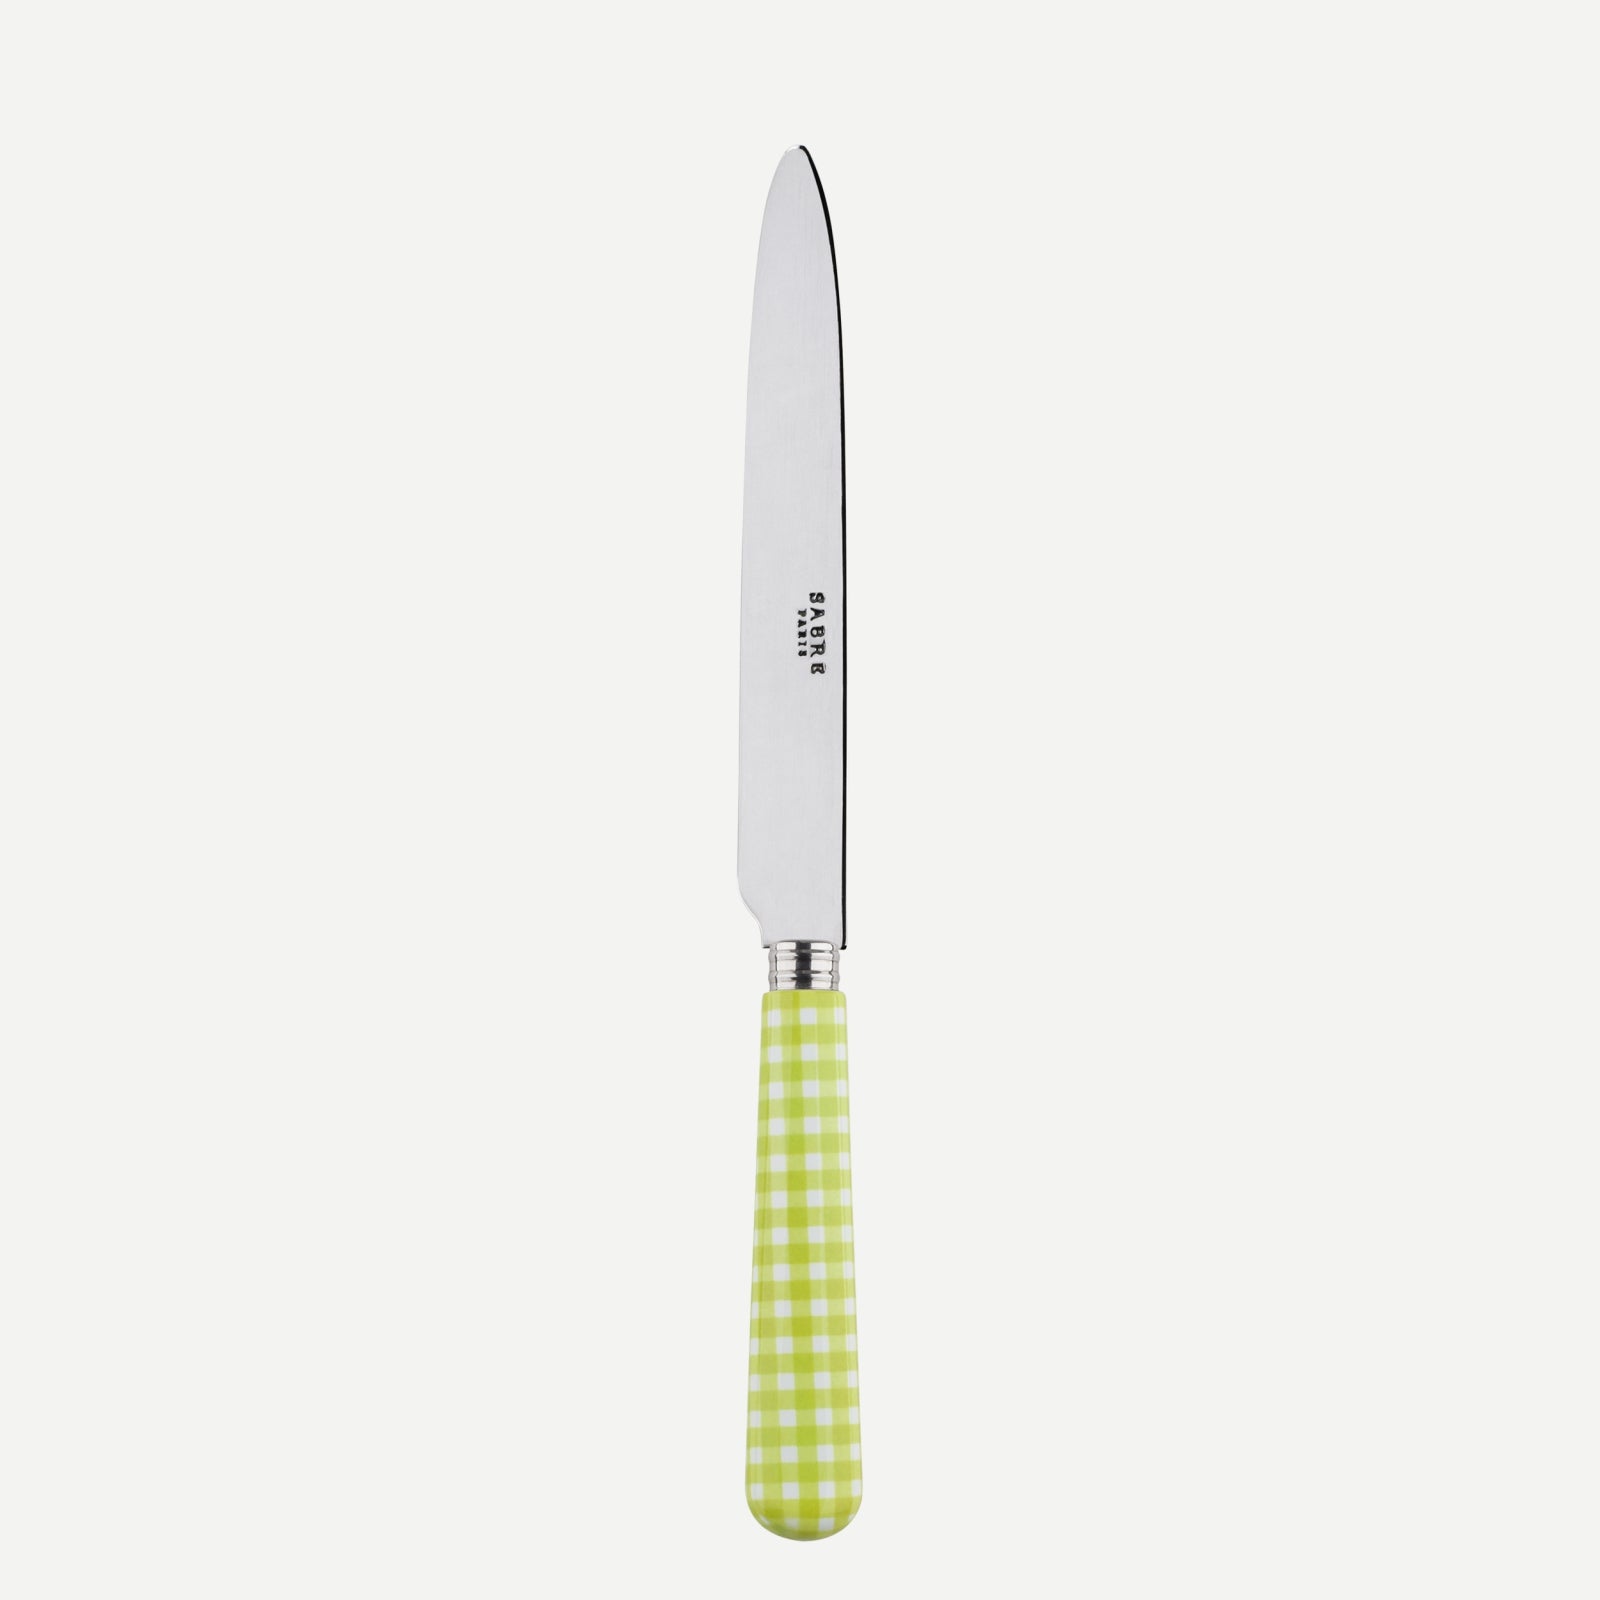 Dinner knife - Gingham - Lime